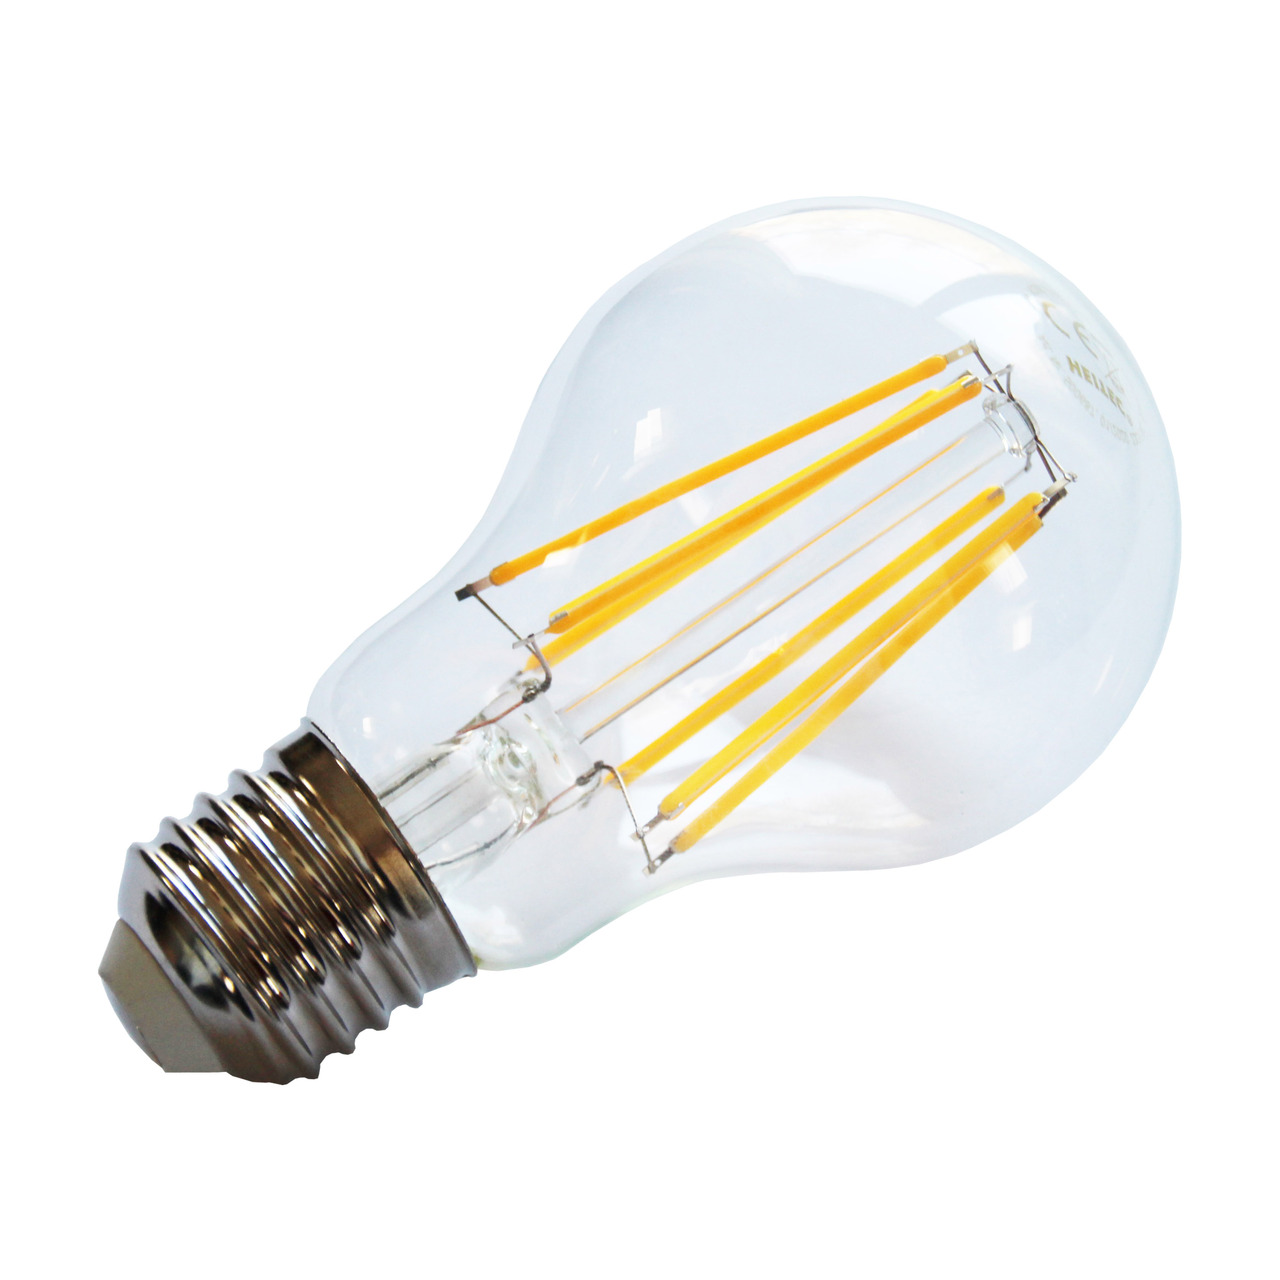 HEITEC 8-W-Filament-LED-Lampe A60- E27- 810 lm- warmweiss- klar